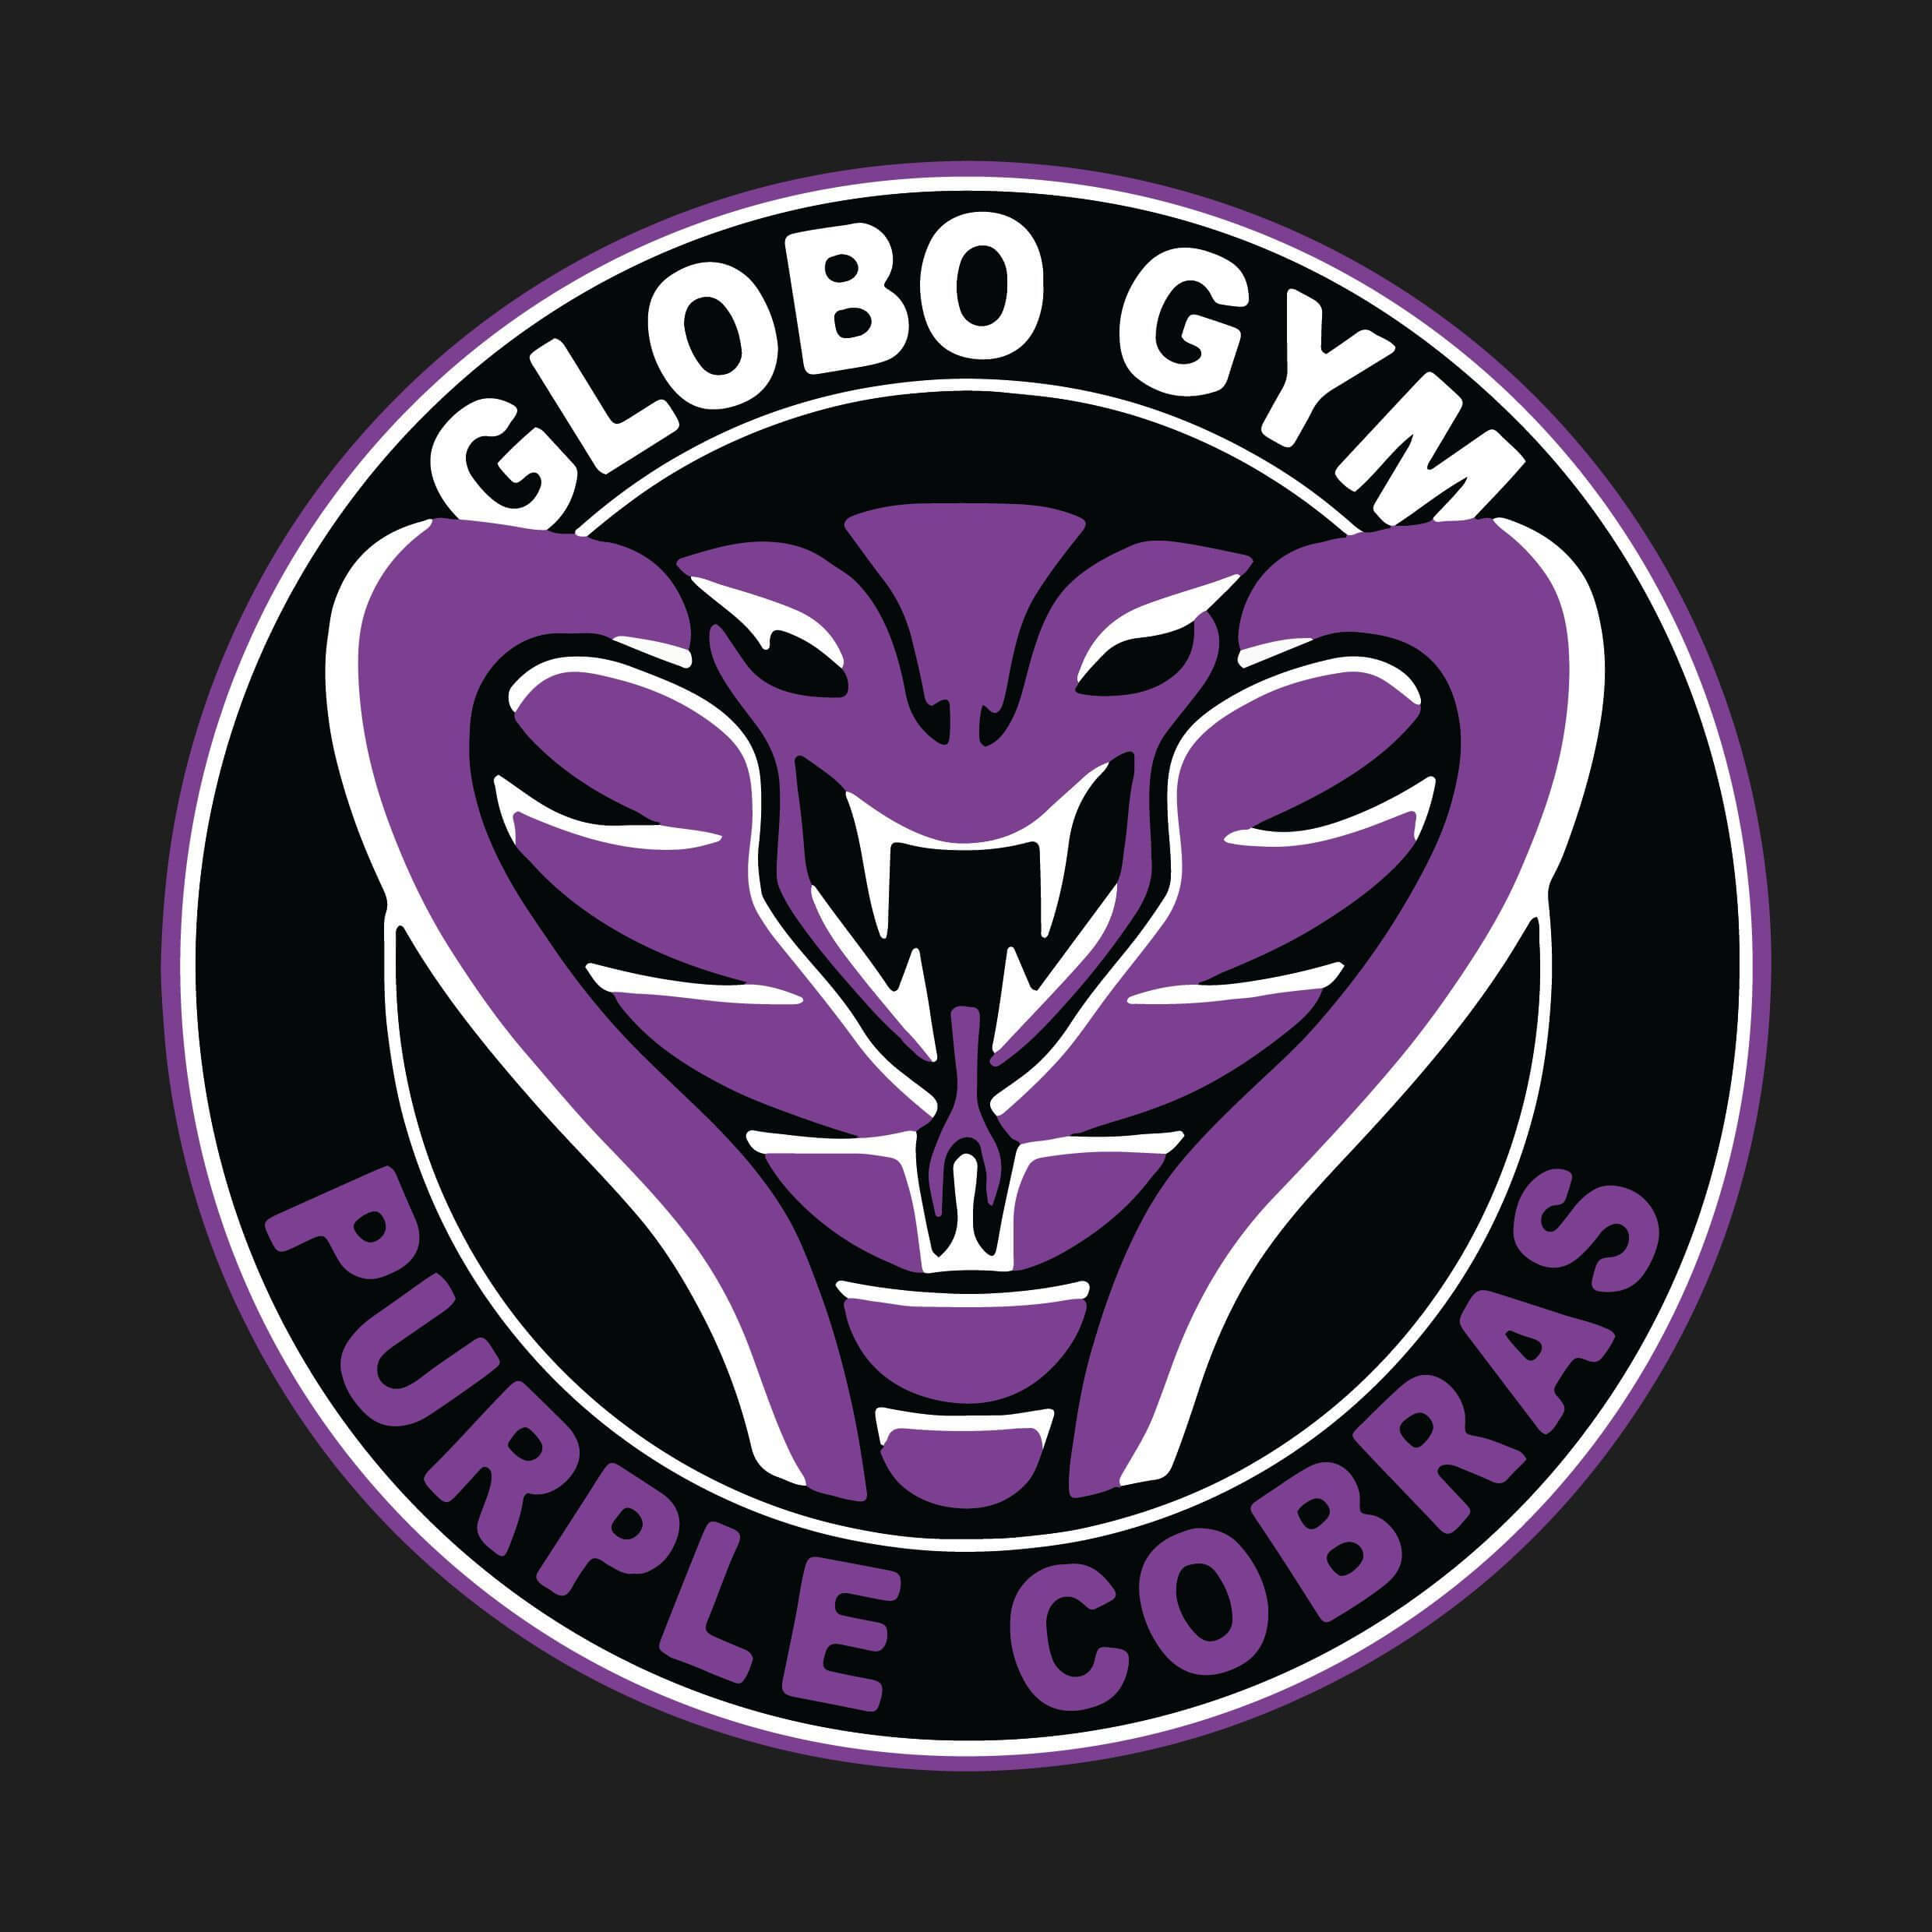 Globo gym 